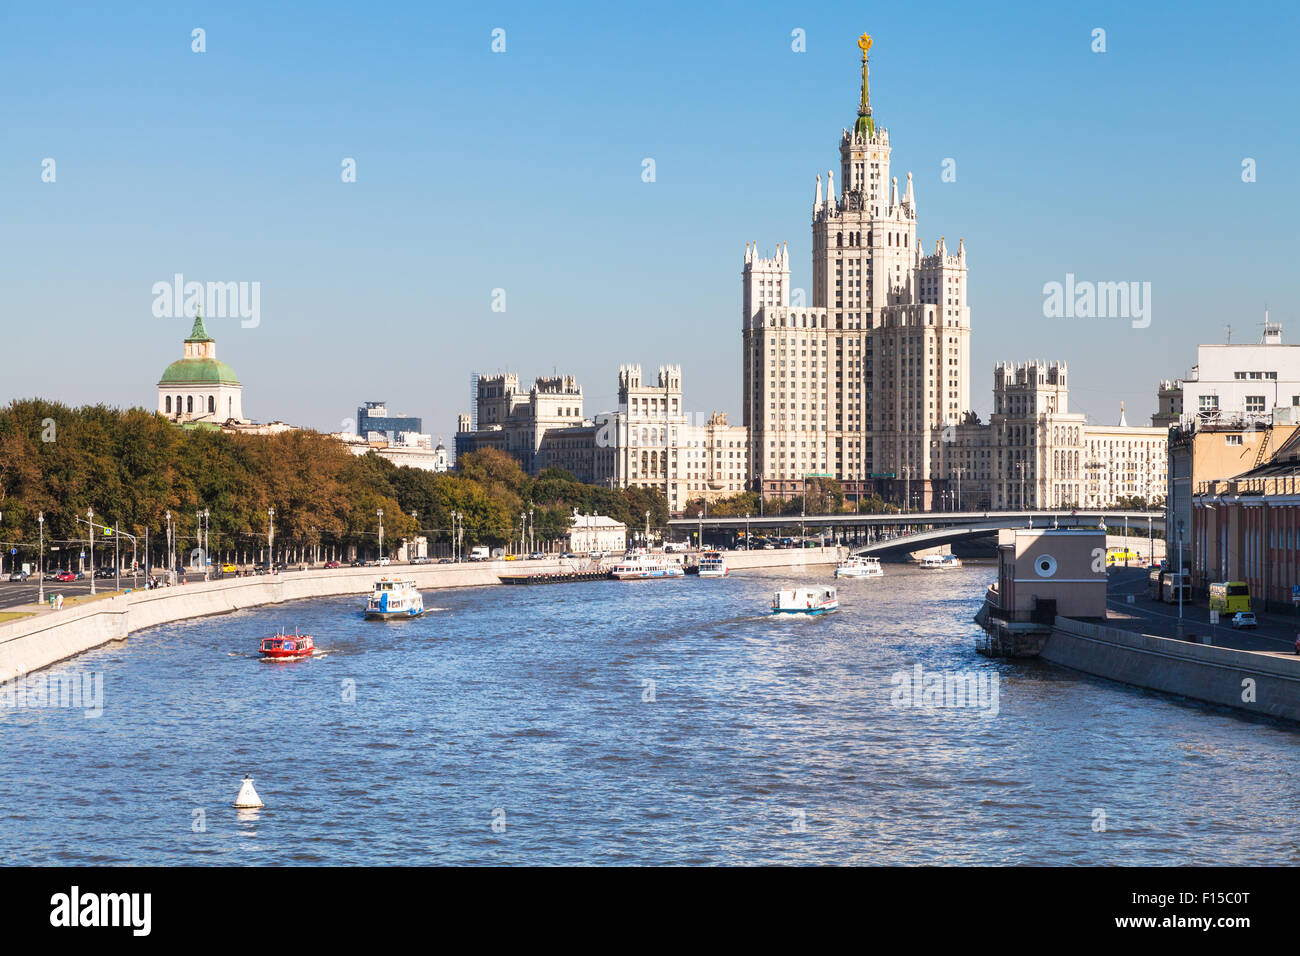 Moscow skyline - Moskva River and Moskvoretskaya Embankment, Raushskaya quay, Bolshoy Ustinsky Bridge and Kotelnicheskaya Embank Stock Photo